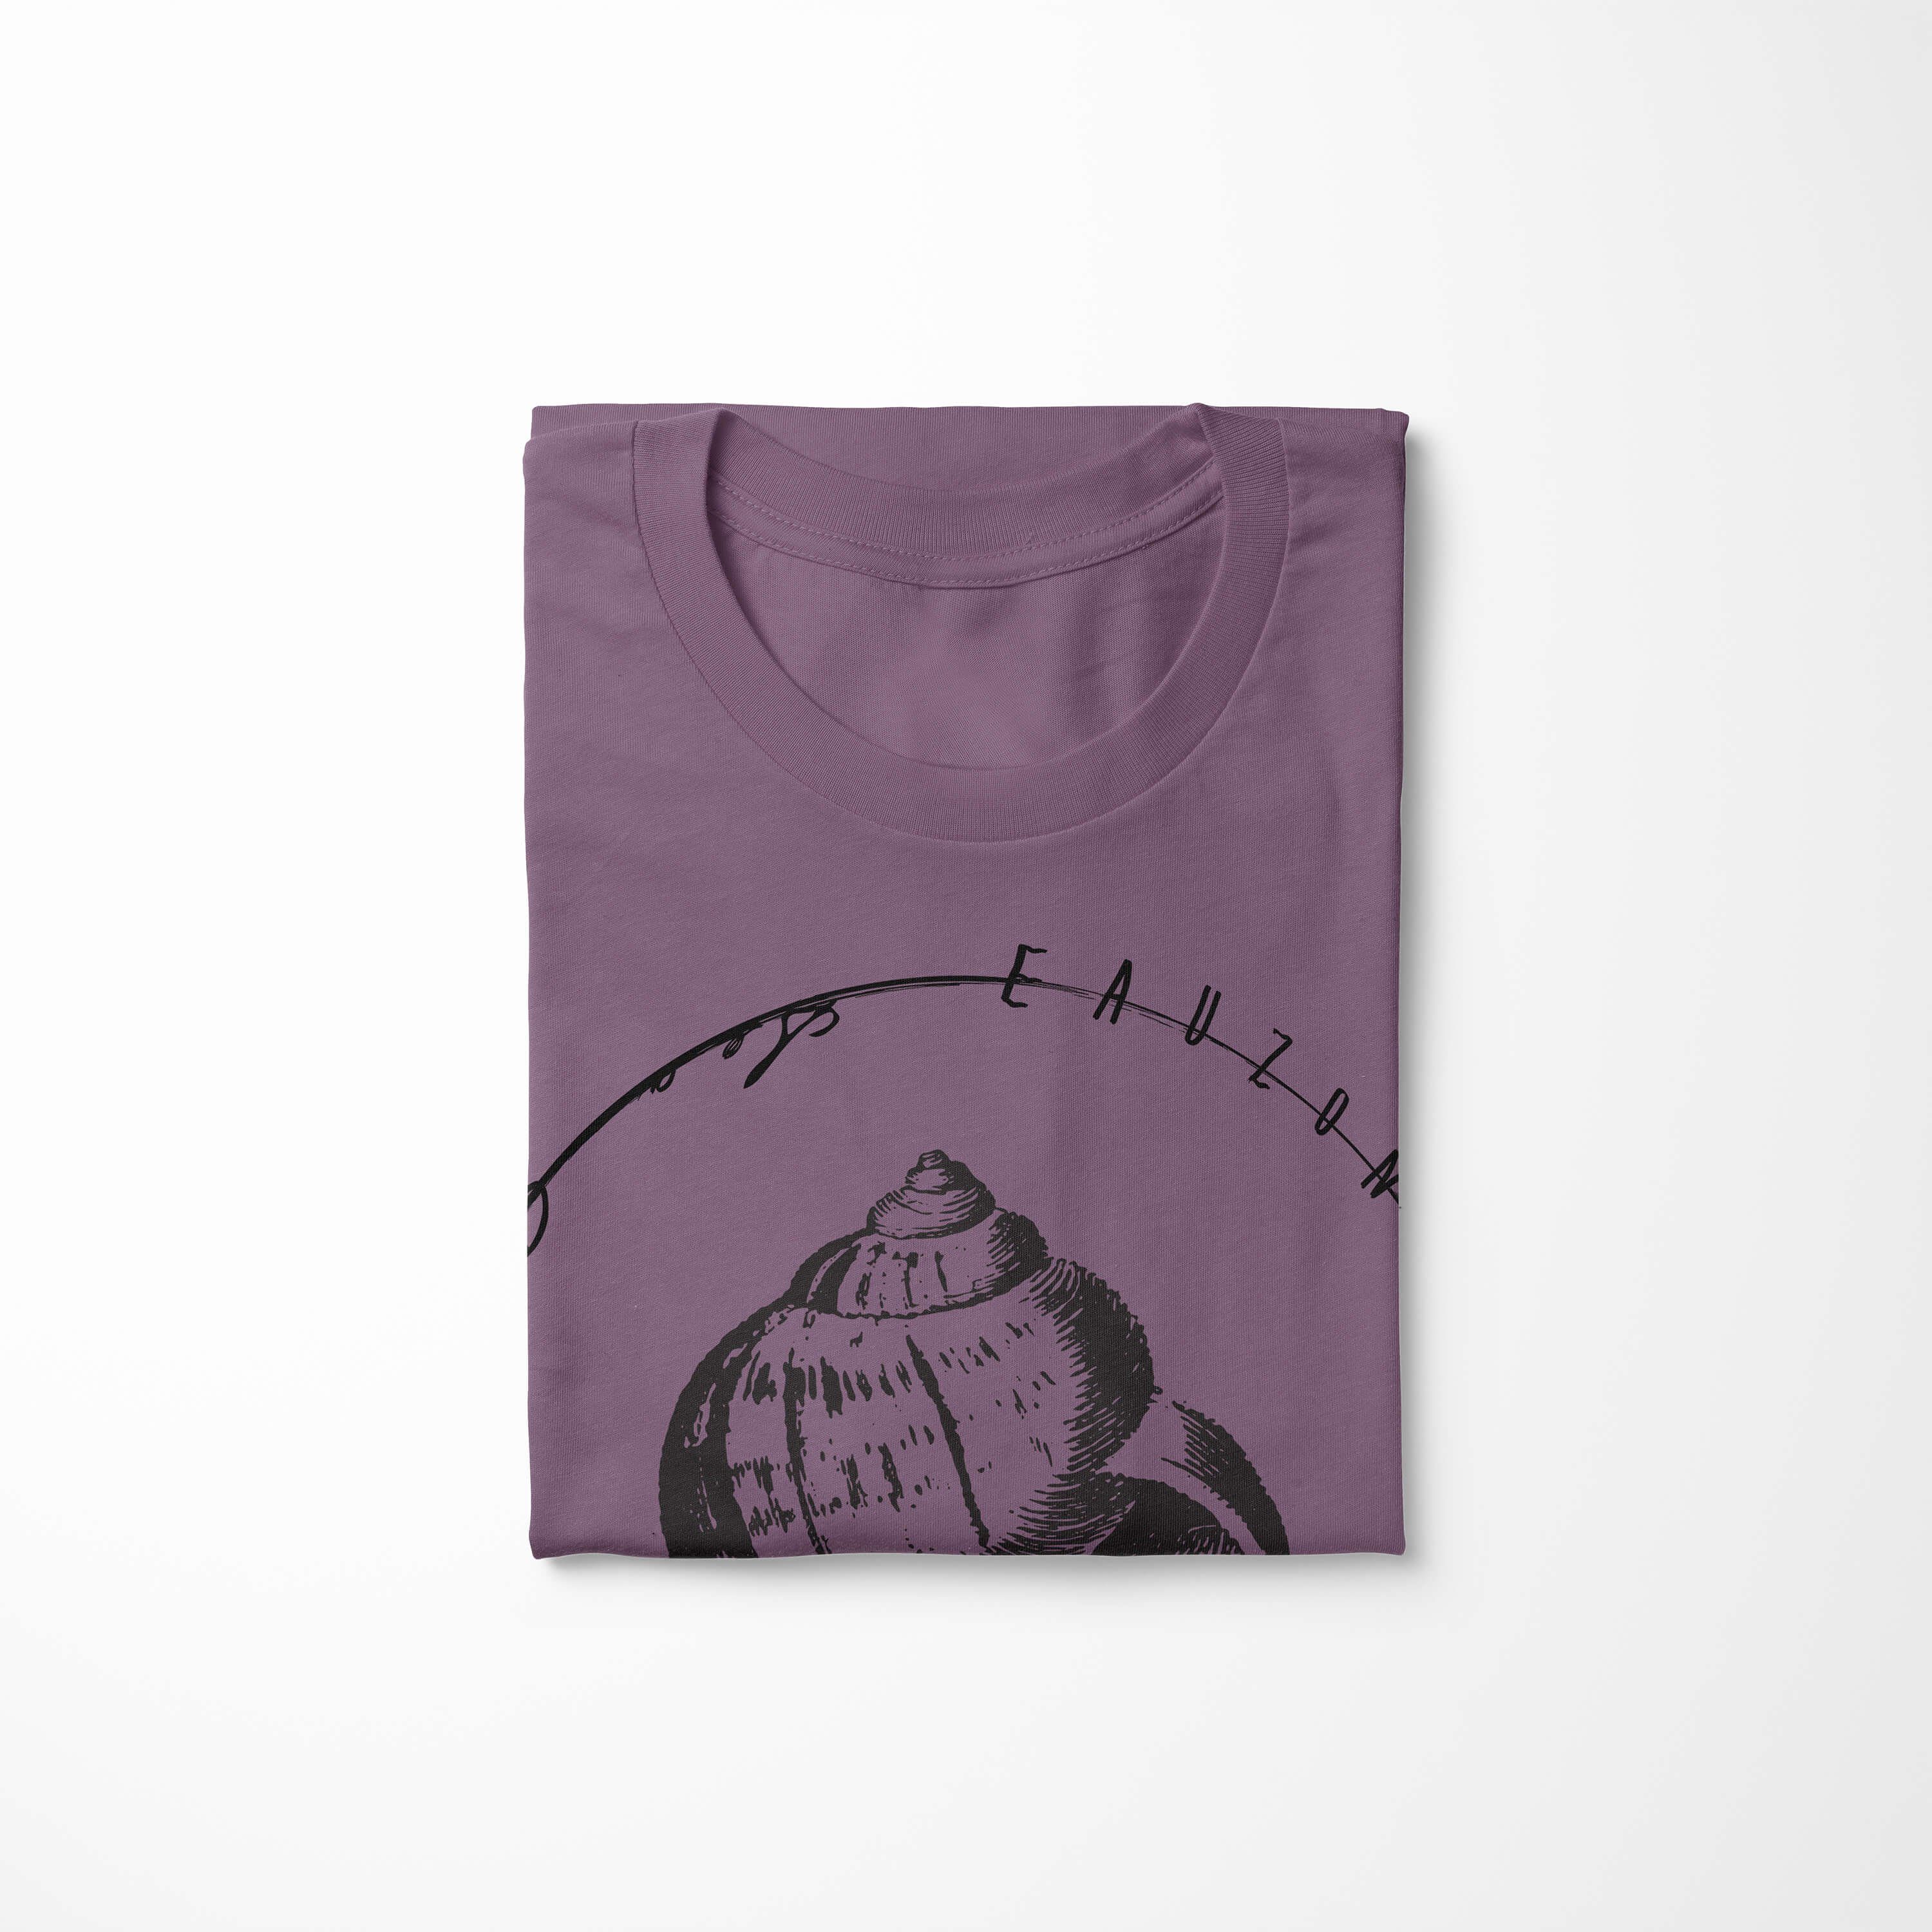 Creatures, T-Shirt Schnitt Serie: T-Shirt - 022 sportlicher Art / und Sinus Sea Struktur Fische feine Sea Tiefsee Shiraz